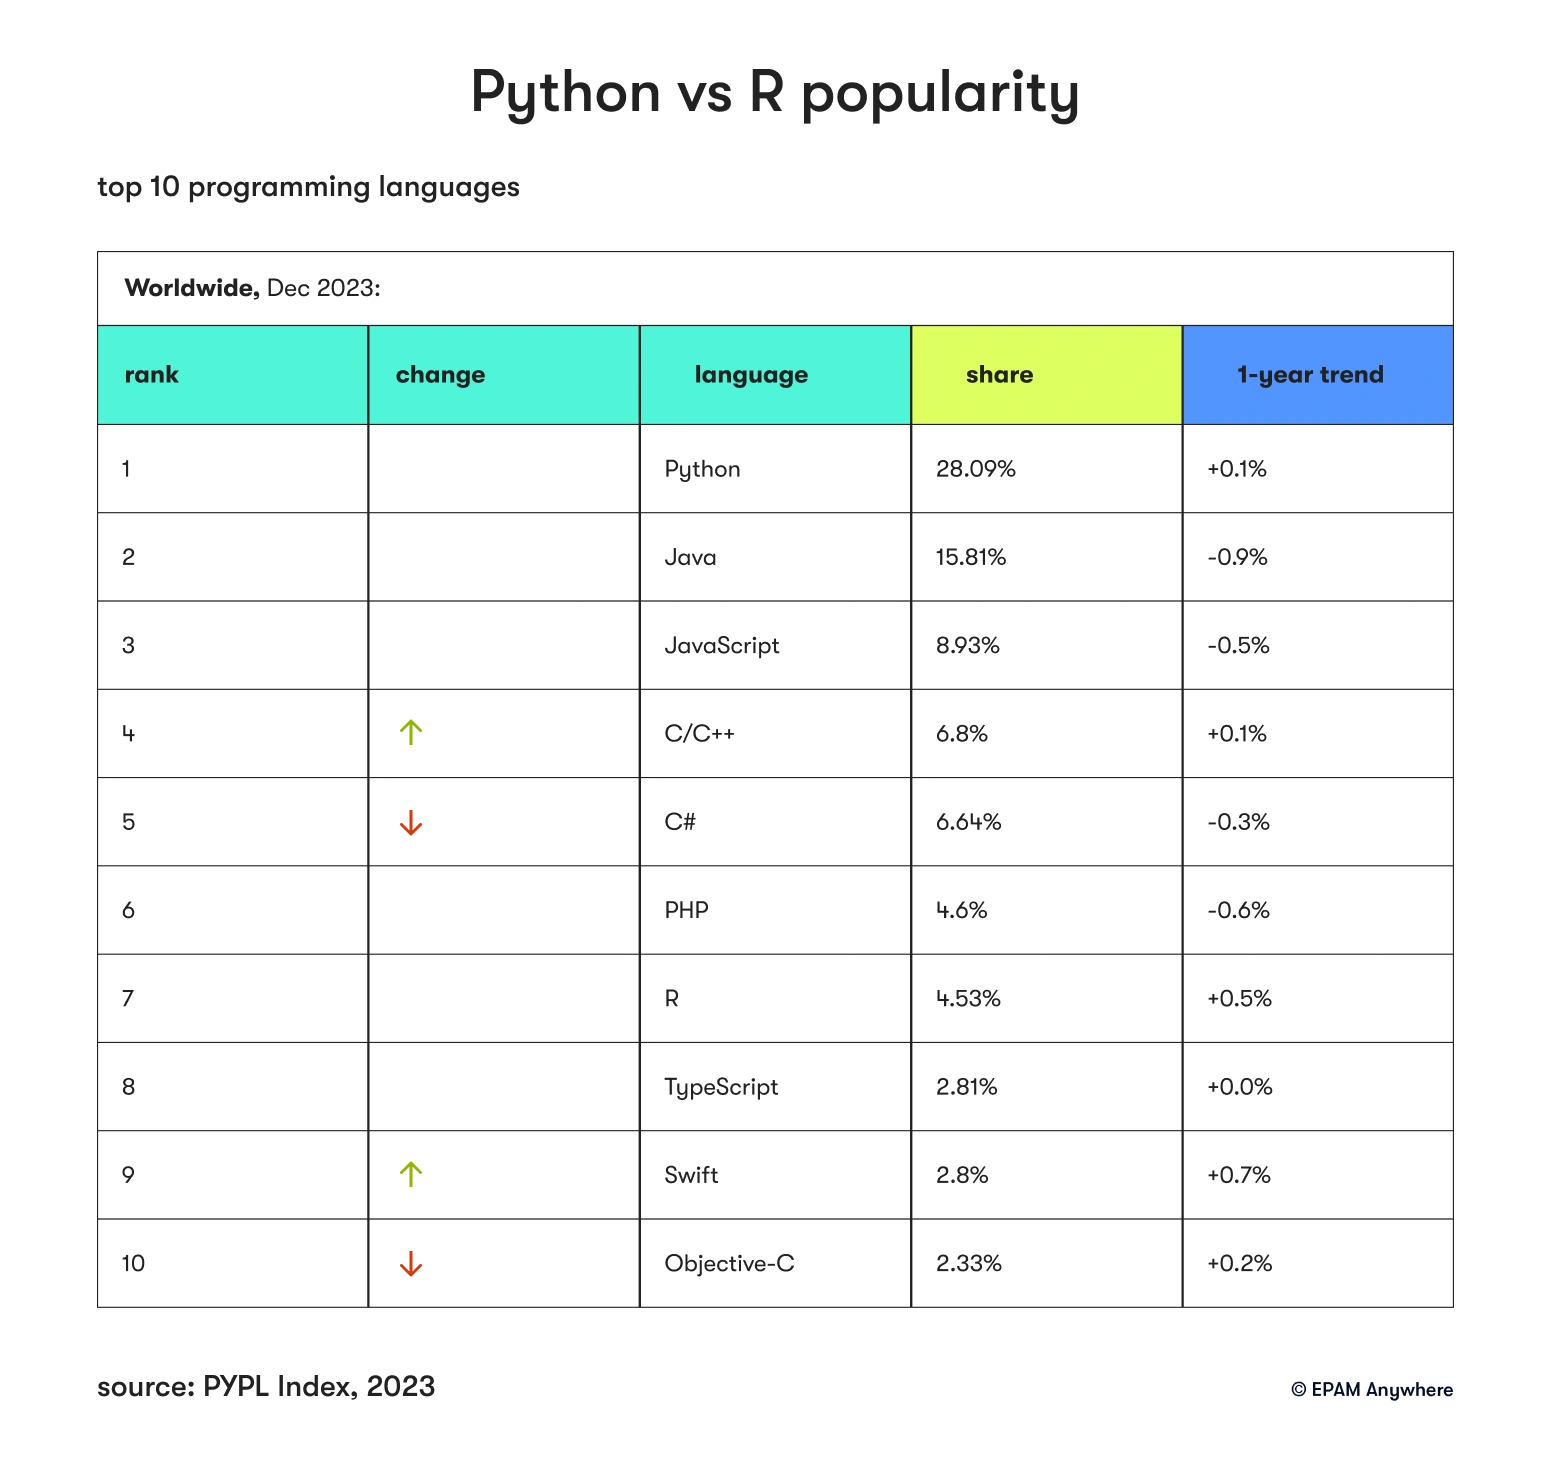 Python vs R popularity